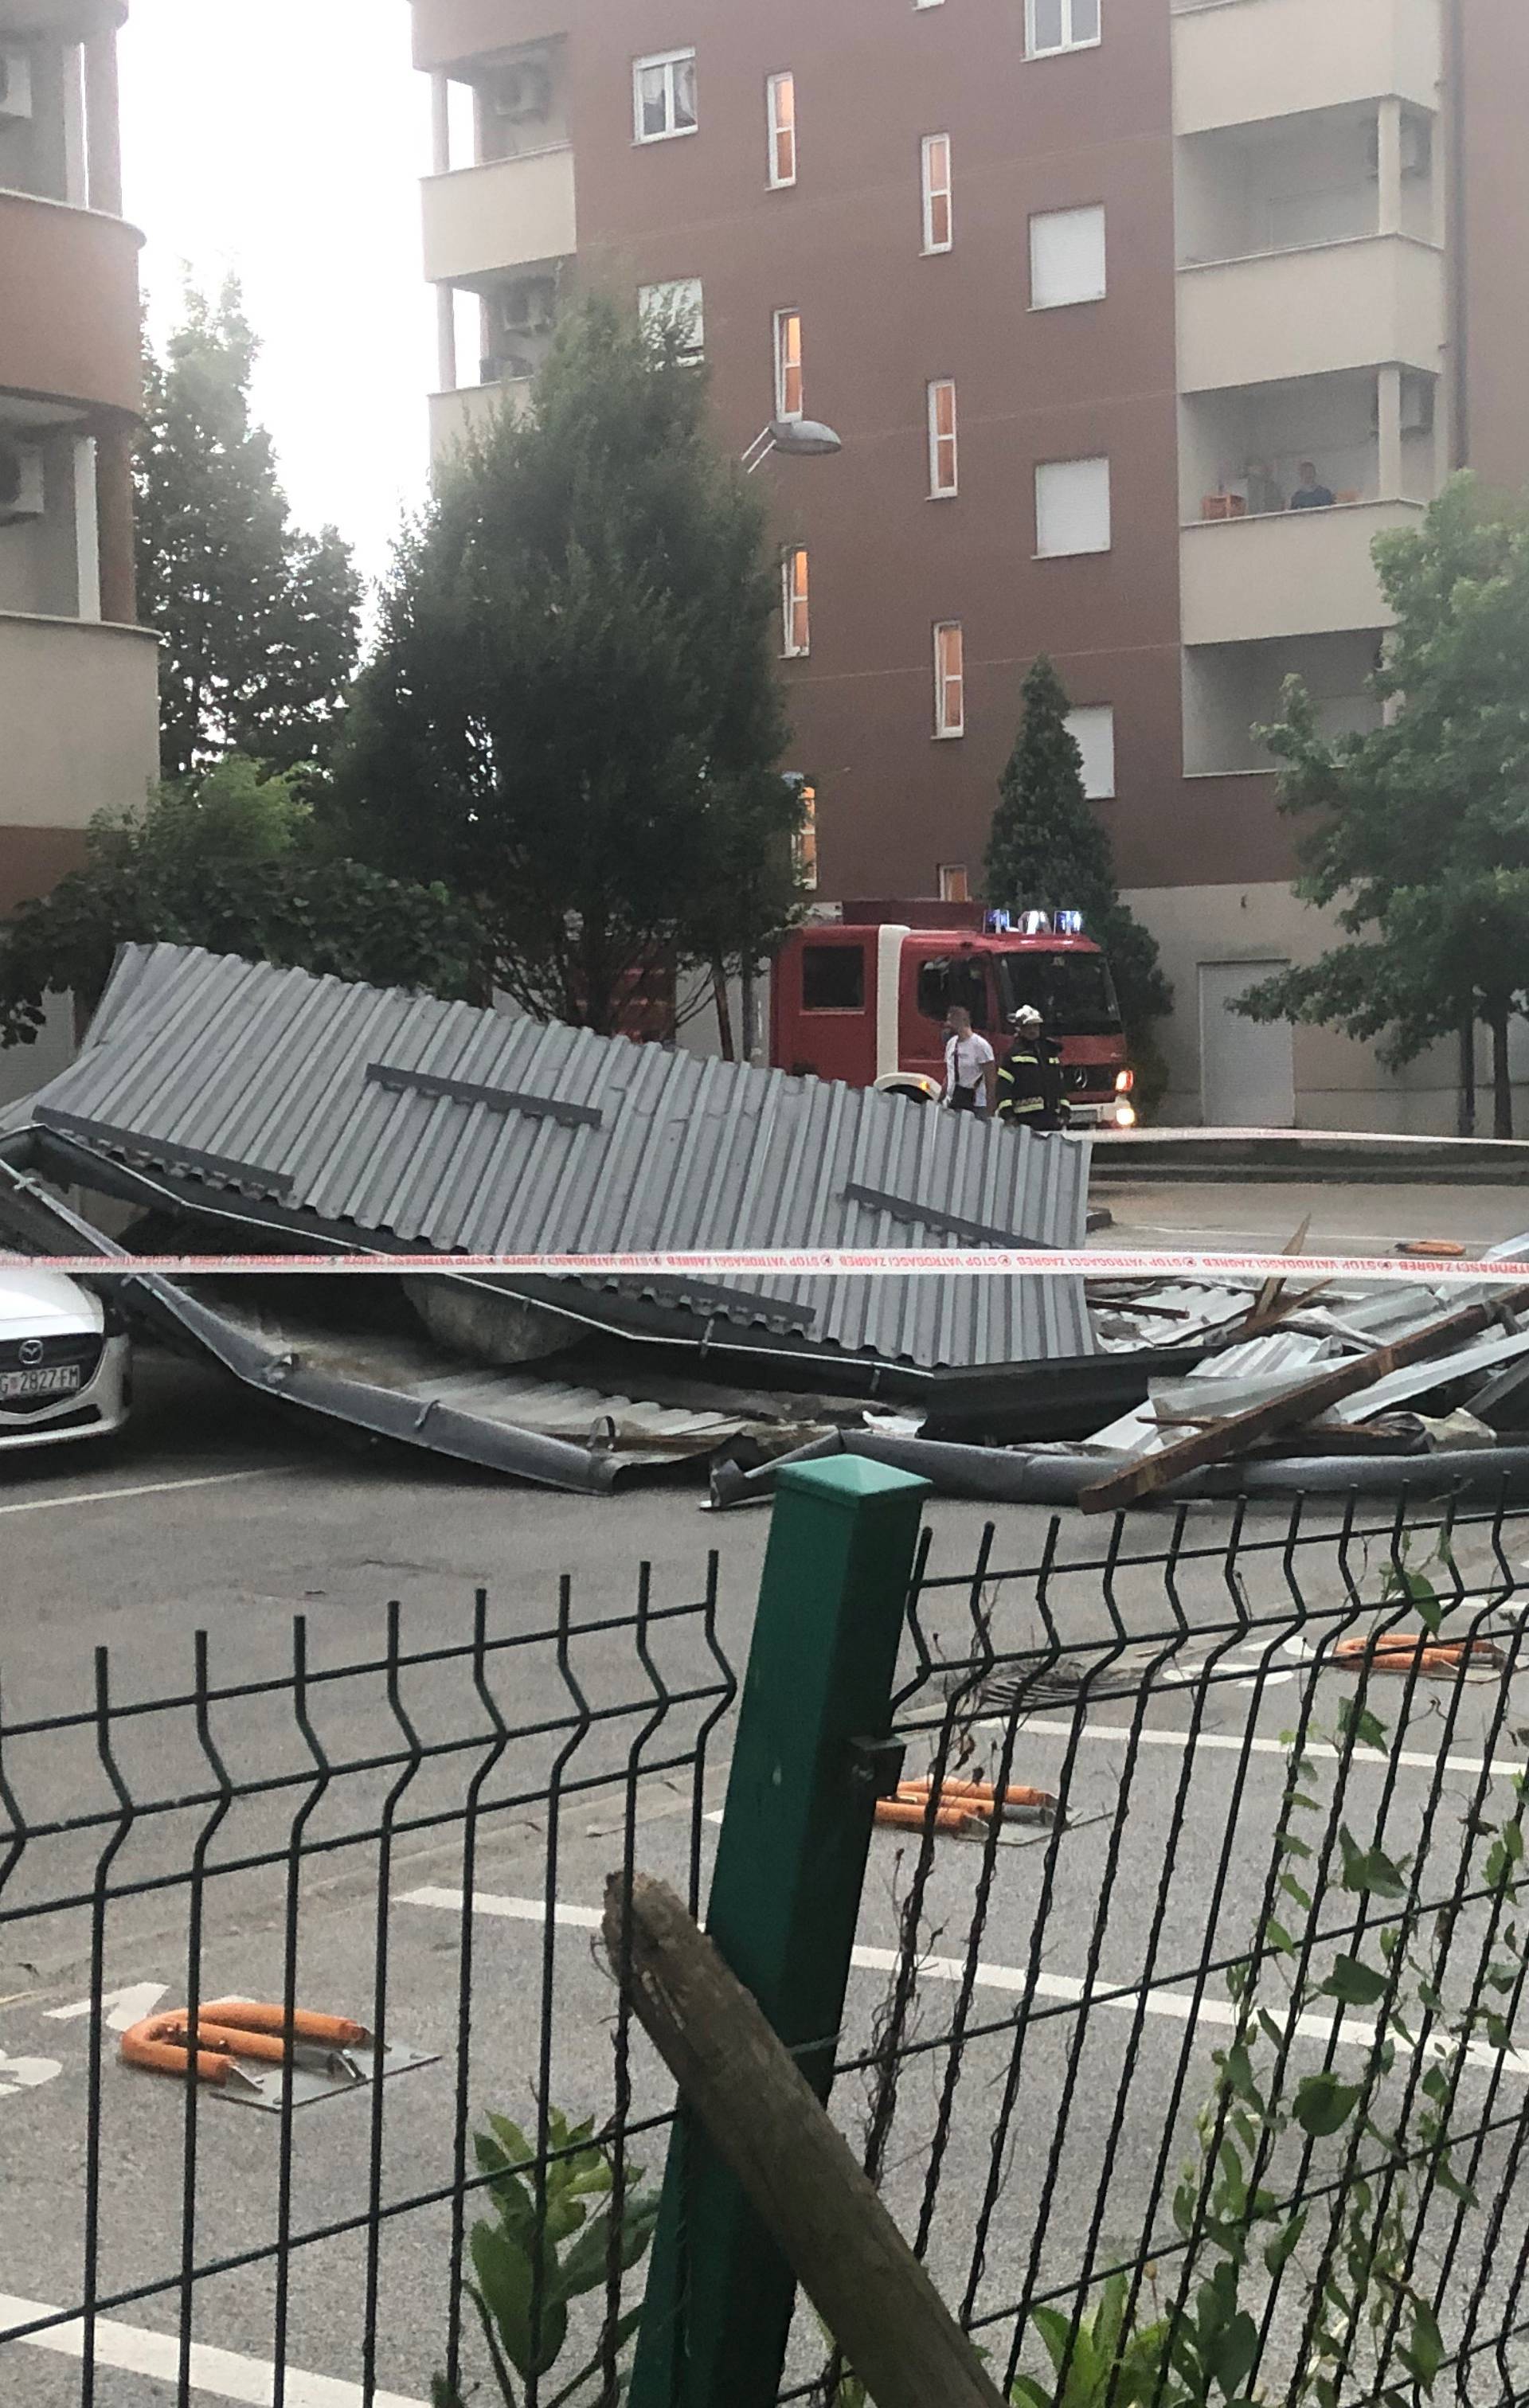 Dramatične snimke: Stanari u šoku, otpao im krov sa zgrade